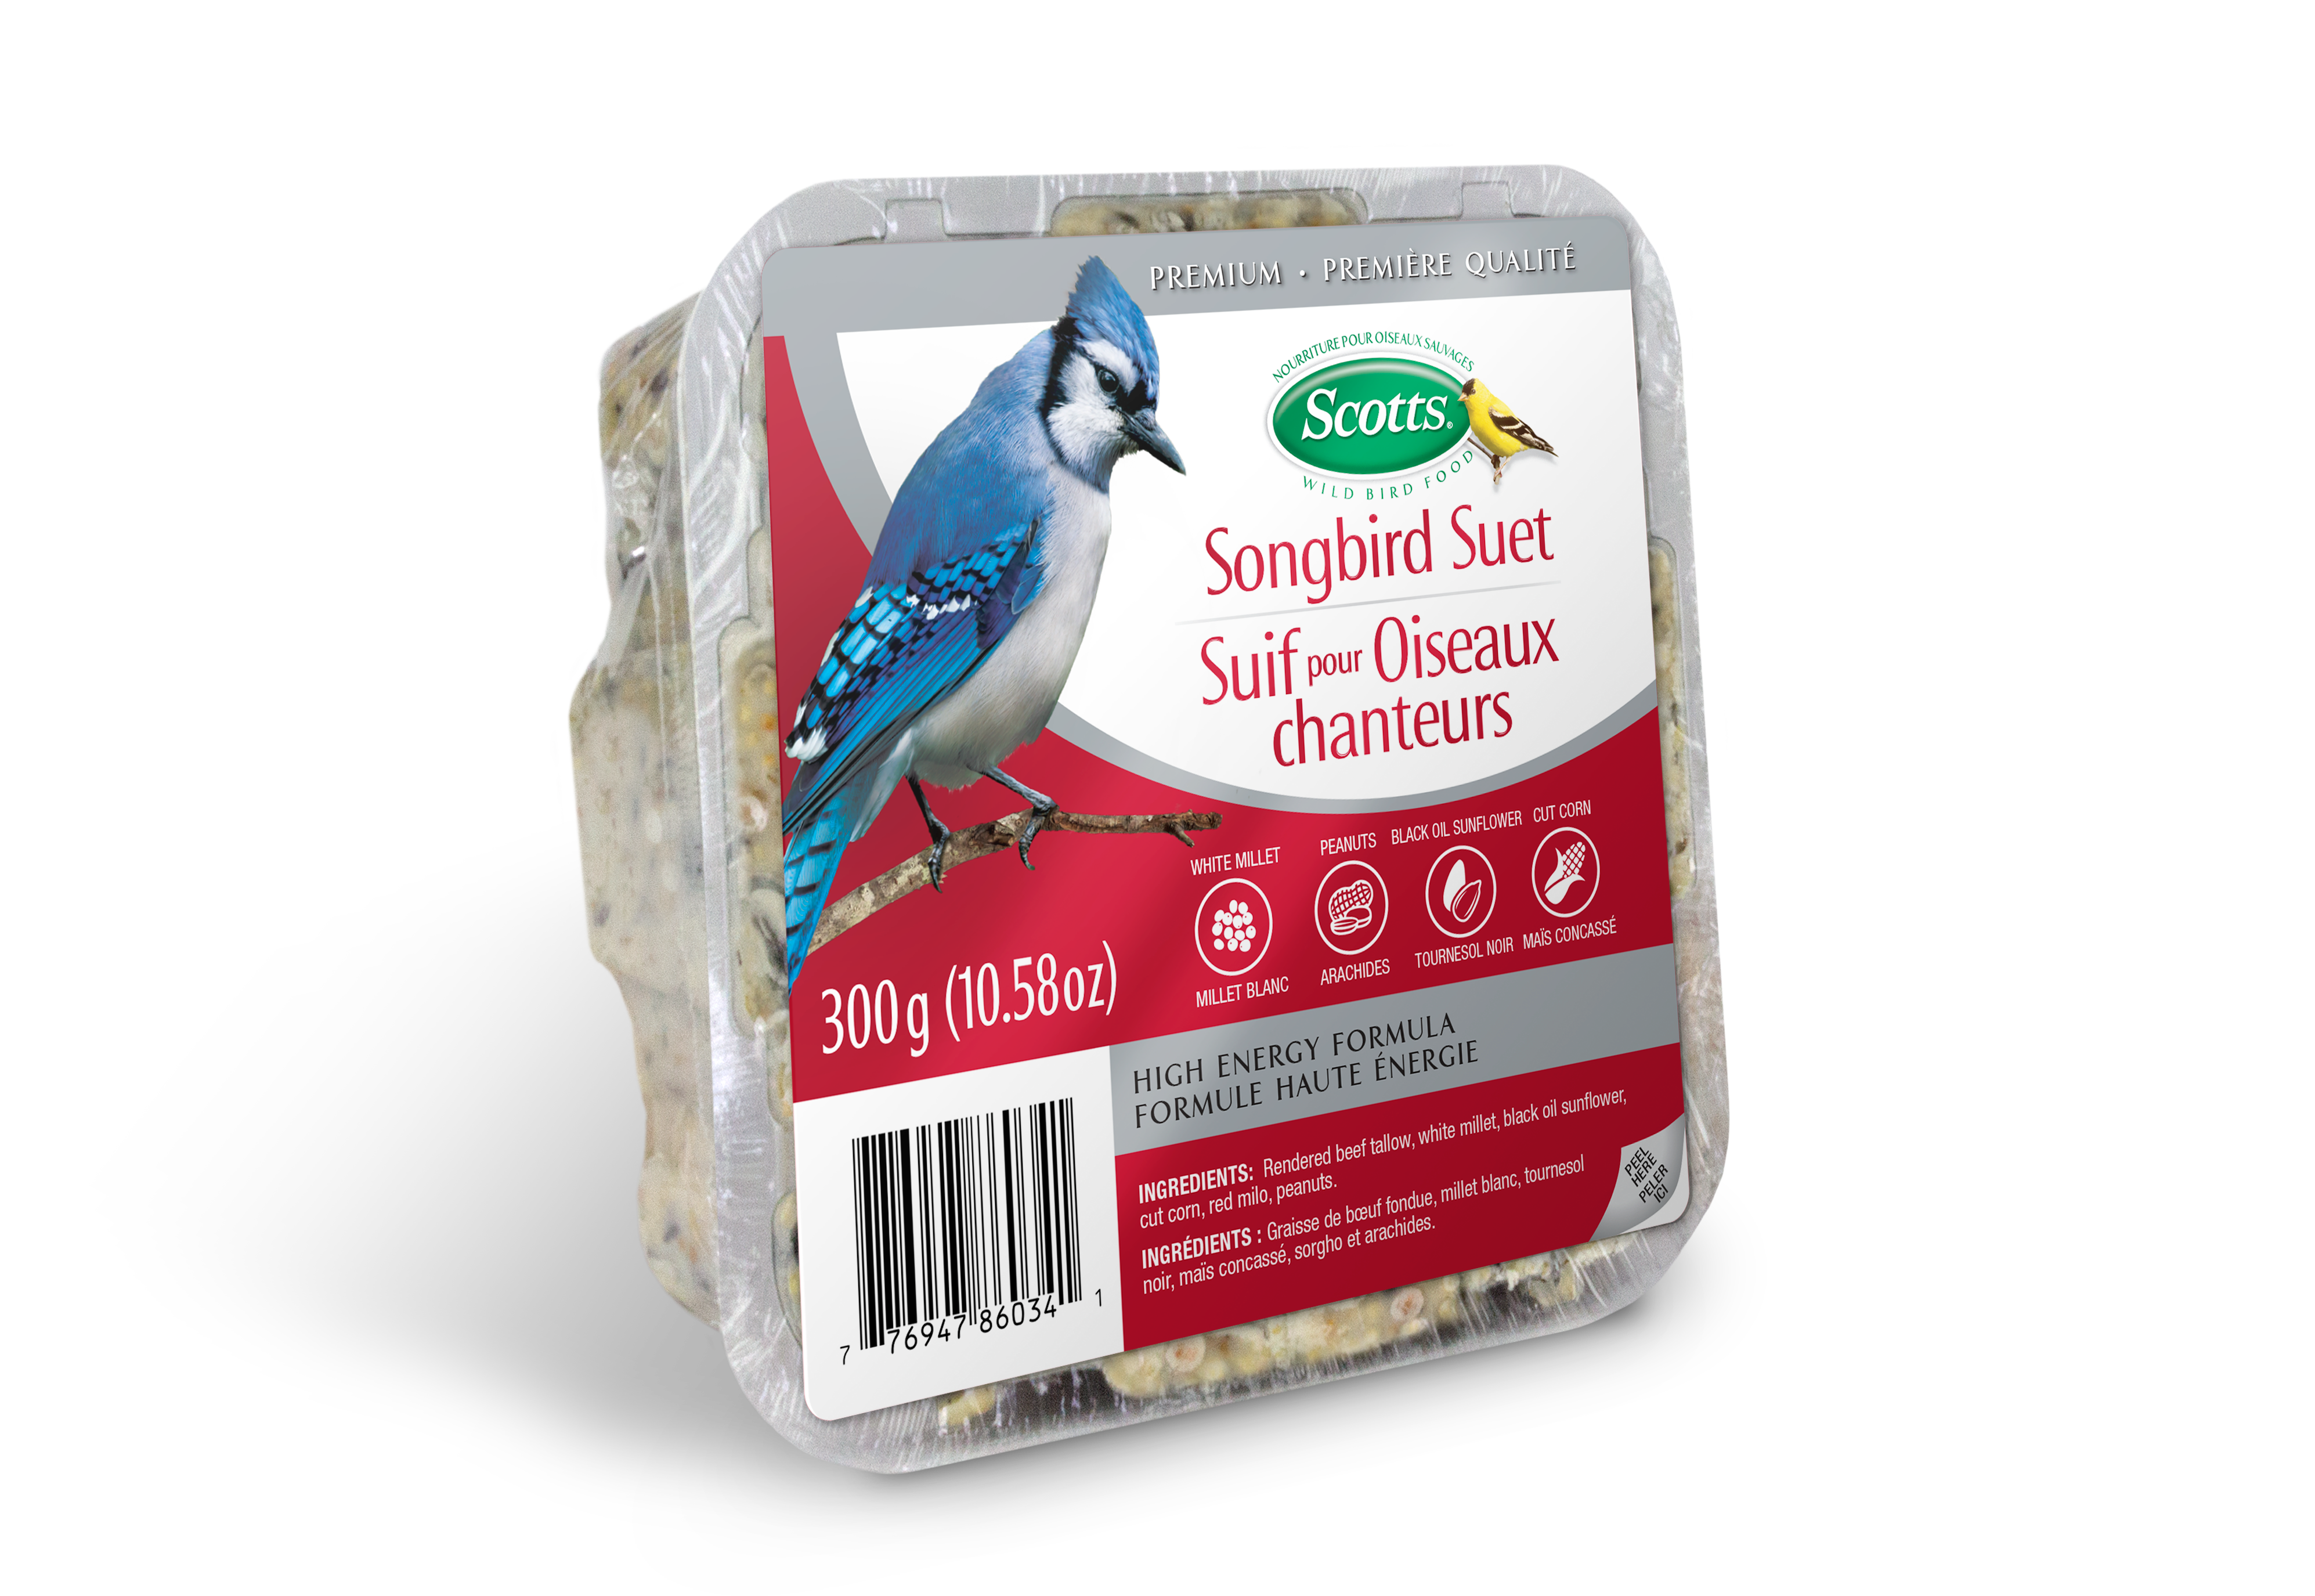 Scotts Songbird Suet Scotts Wild Bird Food - 